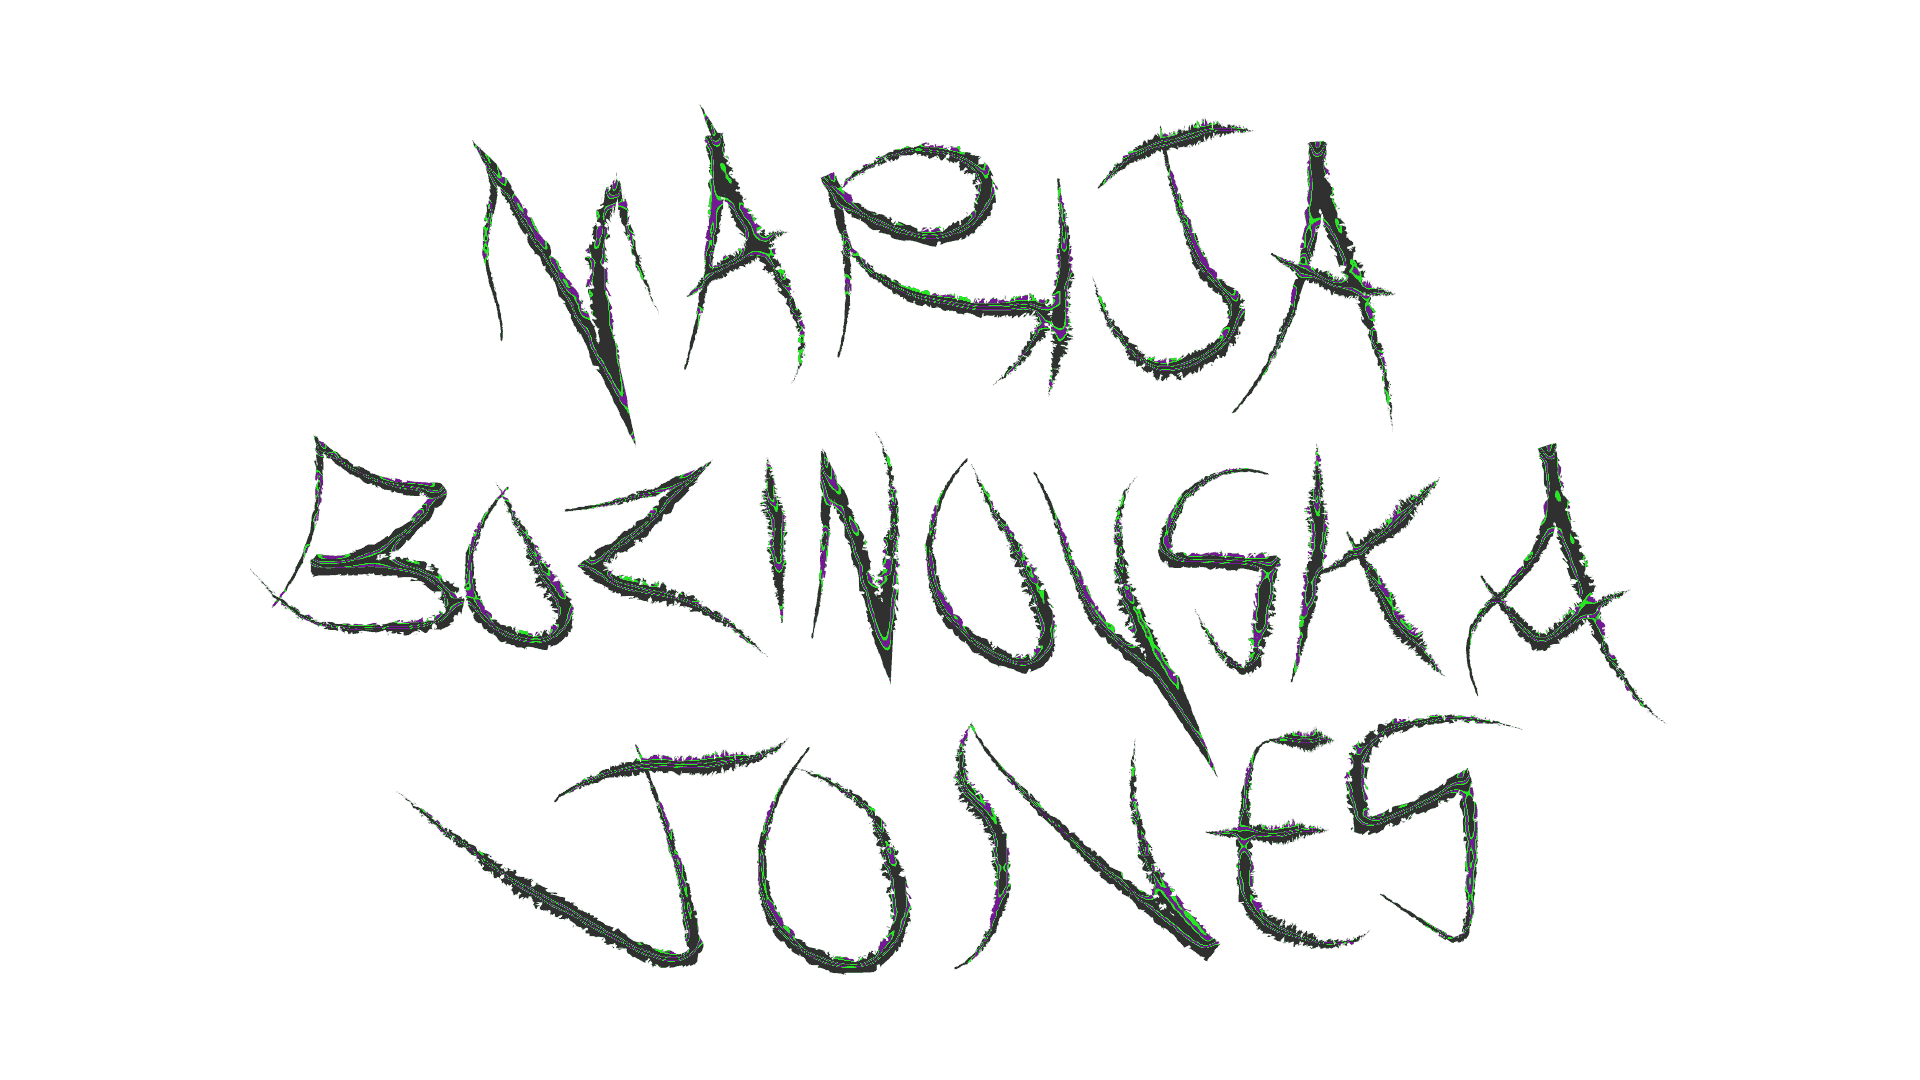 White metalic shiny text reading Marija Bozinovska Jones